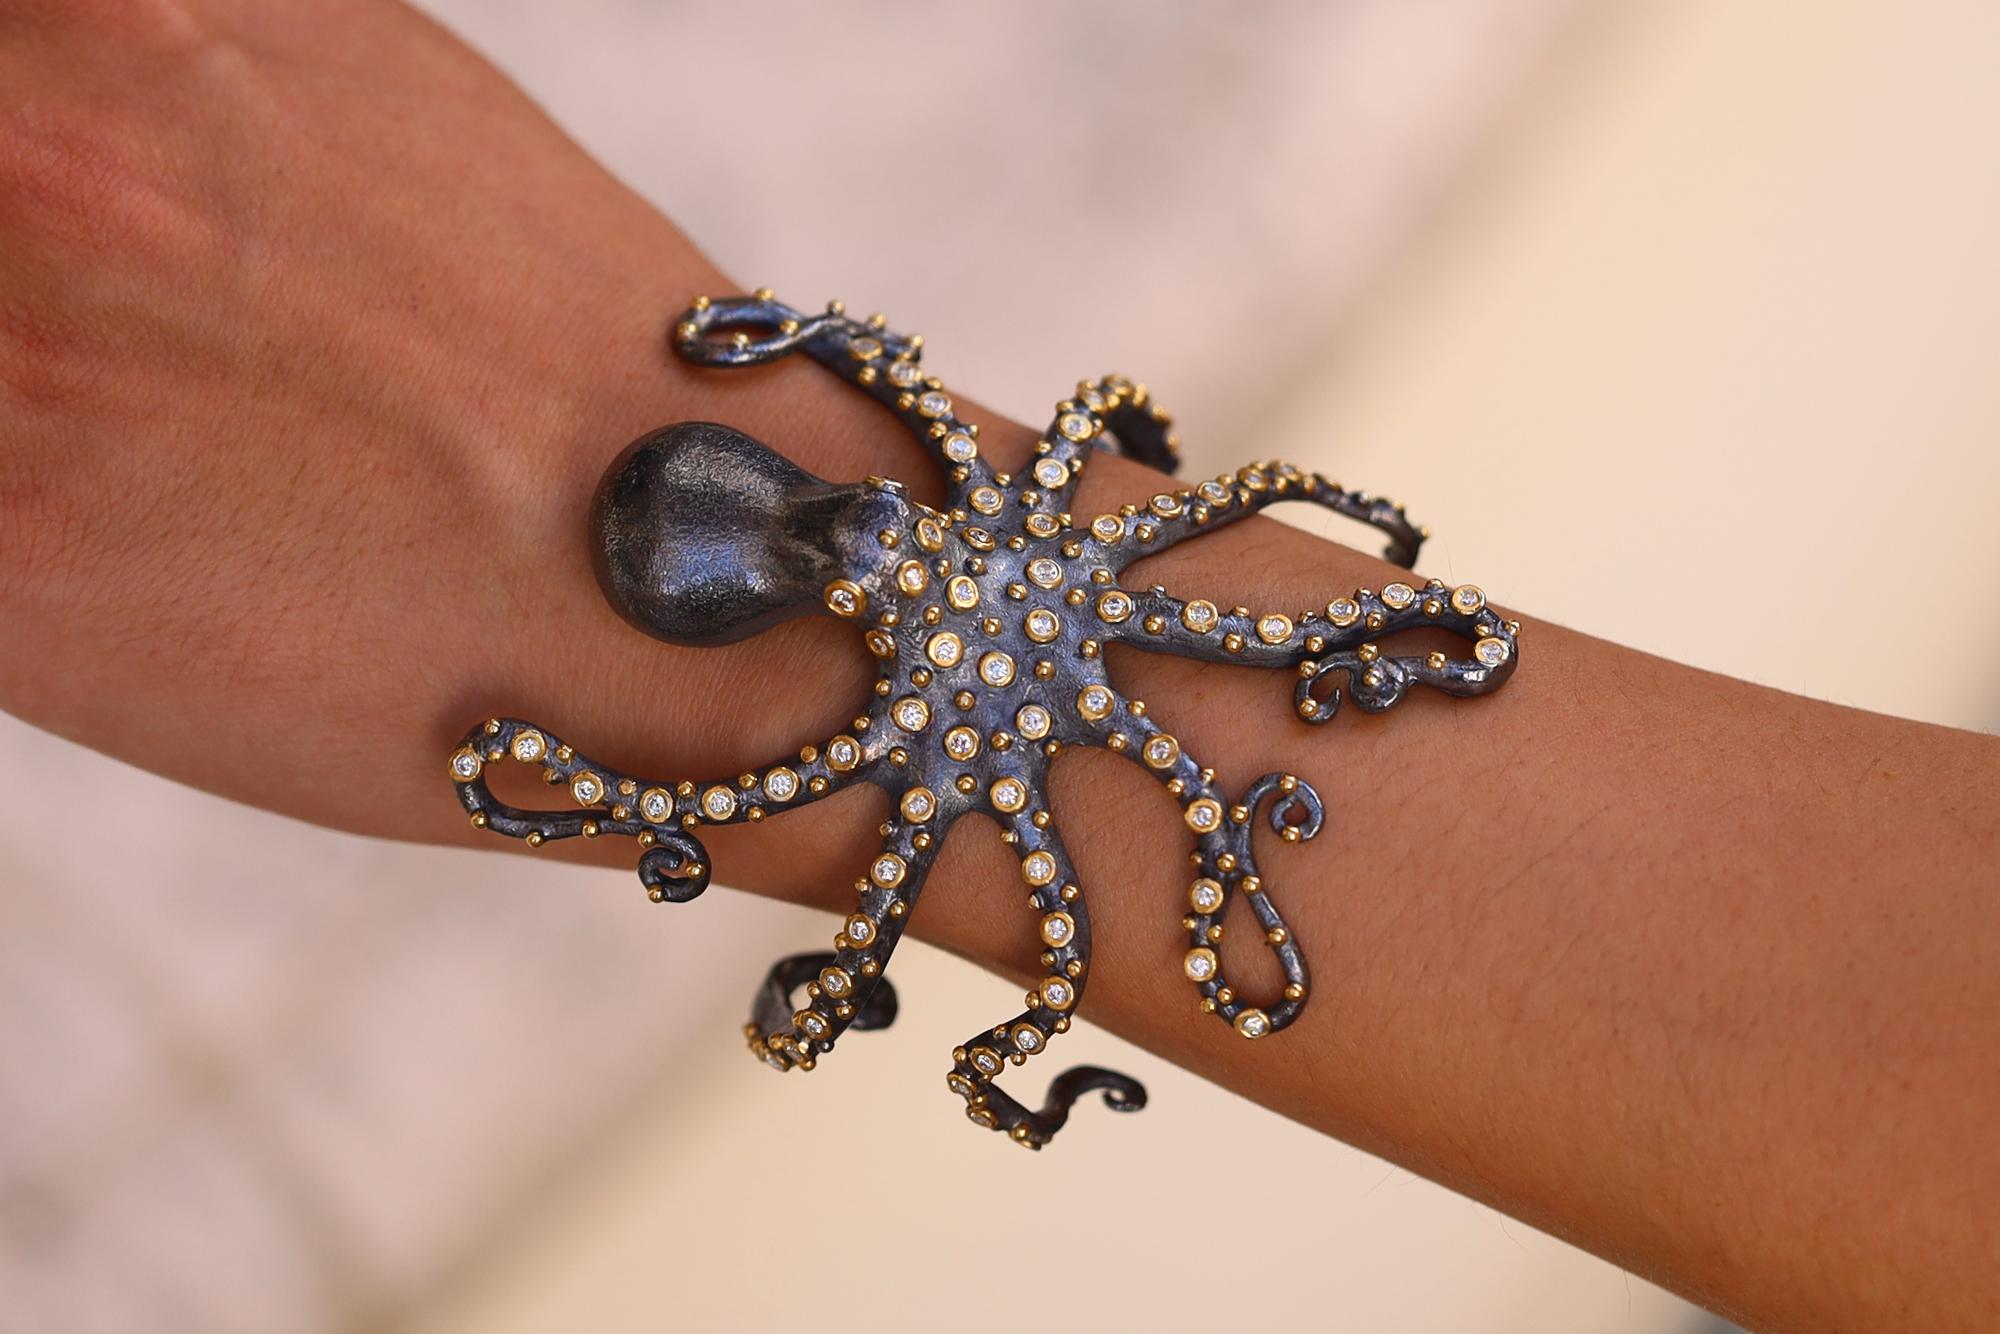 Ce remarquable bracelet manchette en forme de pieuvre, orné de tentacules en diamant, est réalisé avec art en or 24k et en argent sterling oxydé 2 tons. S'enroulant de manière séduisante autour du poignet, cette créature marine possède des yeux en